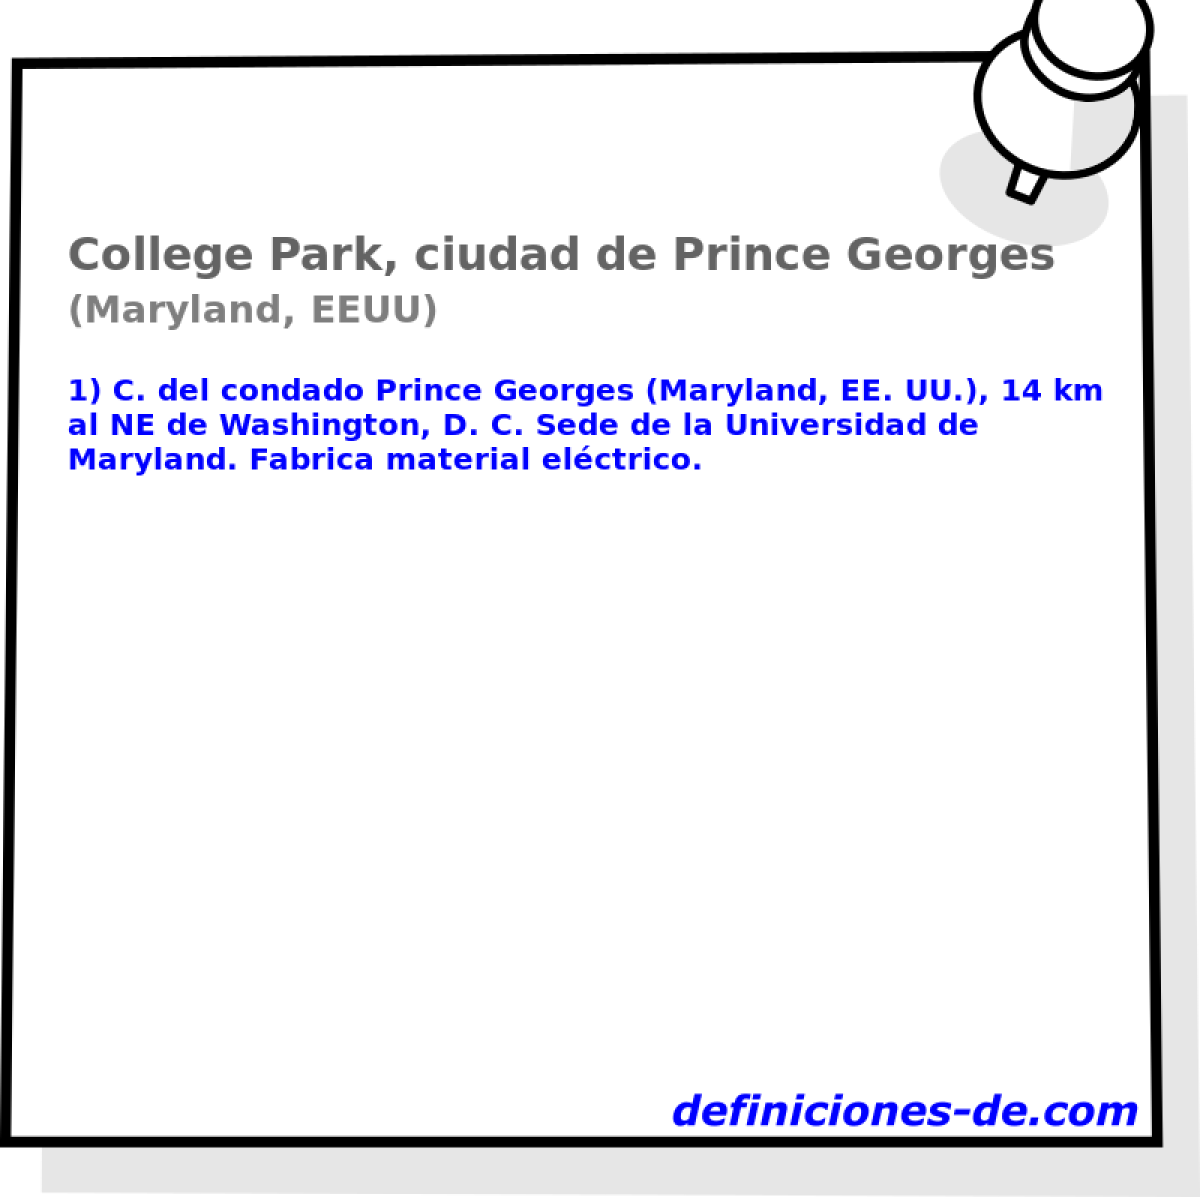 College Park, ciudad de Prince Georges (Maryland, EEUU)